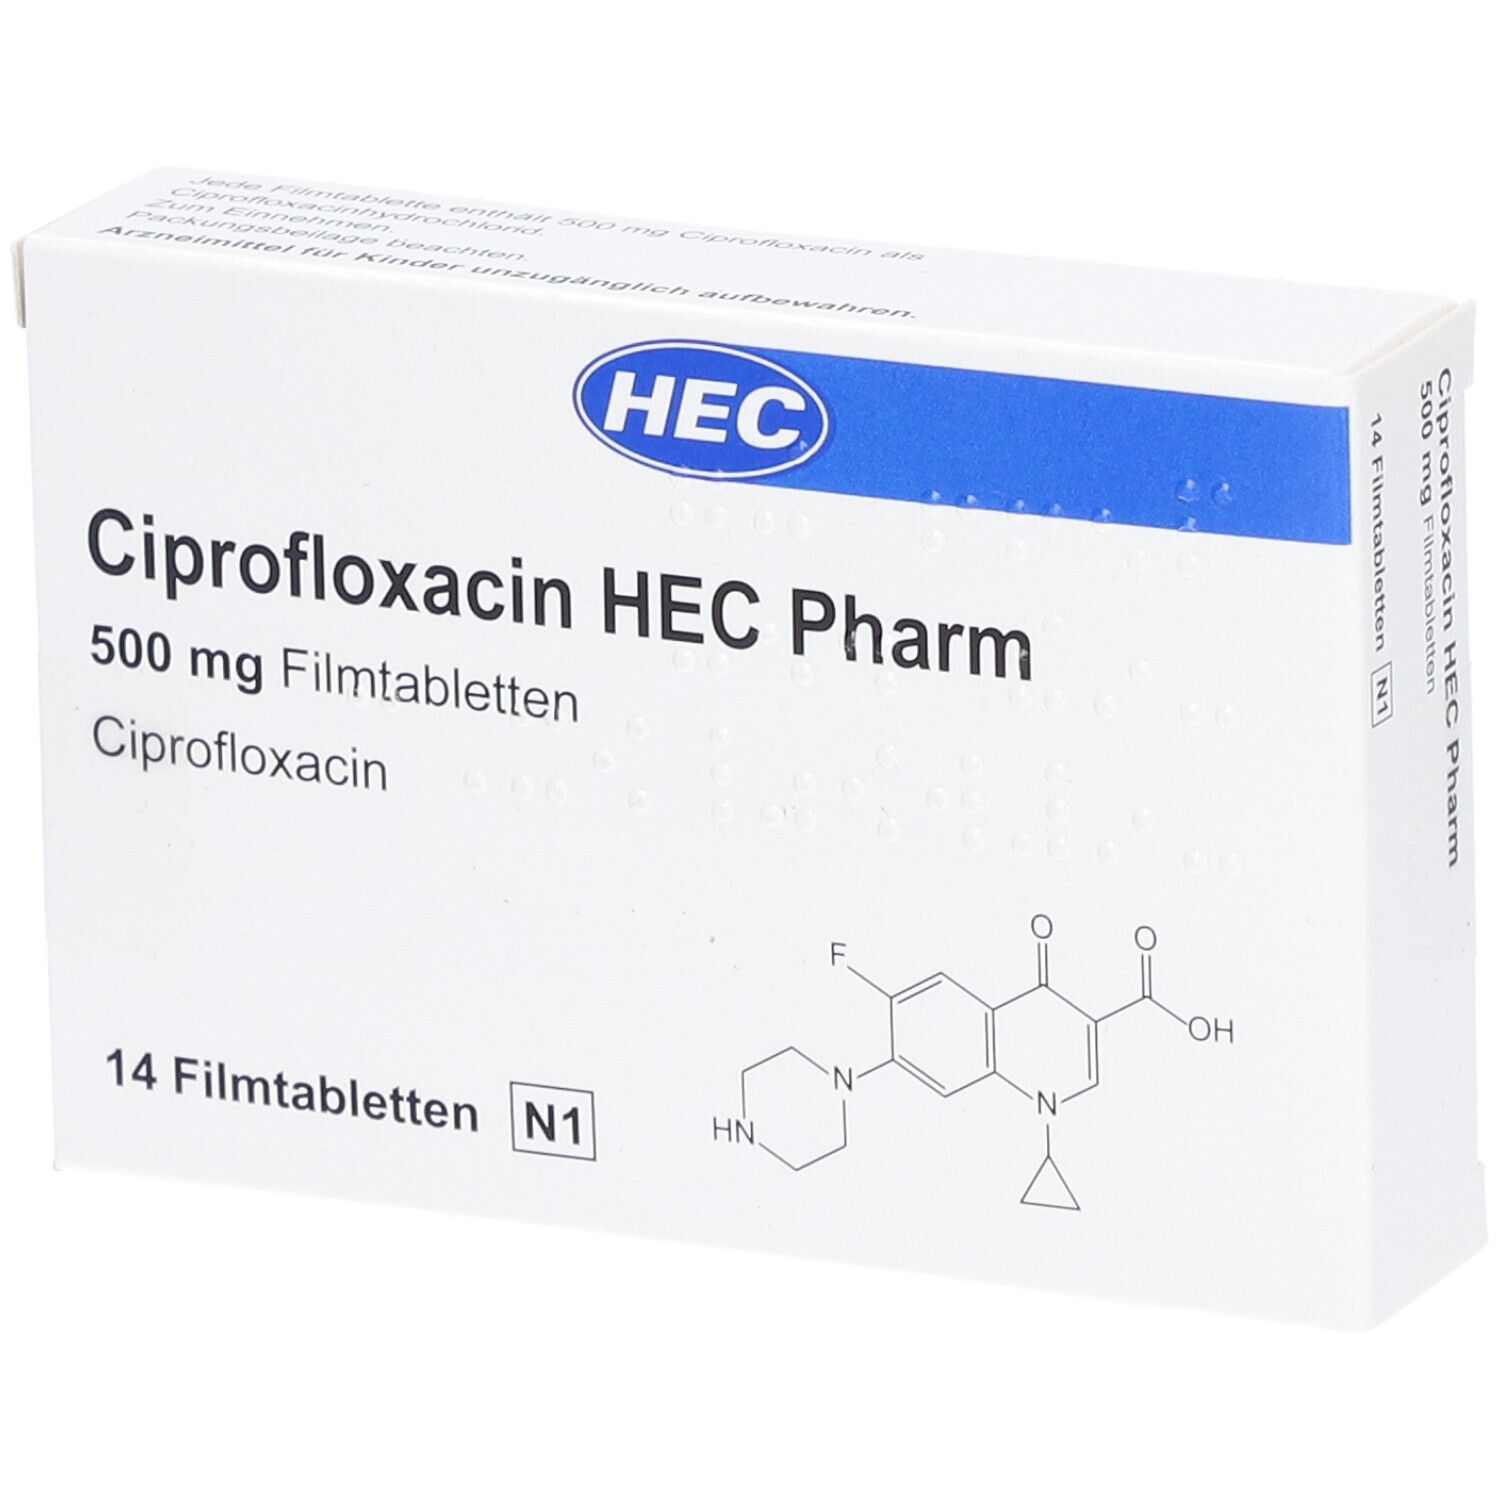 Ciprofloxacin HEC Pharm 500 mg